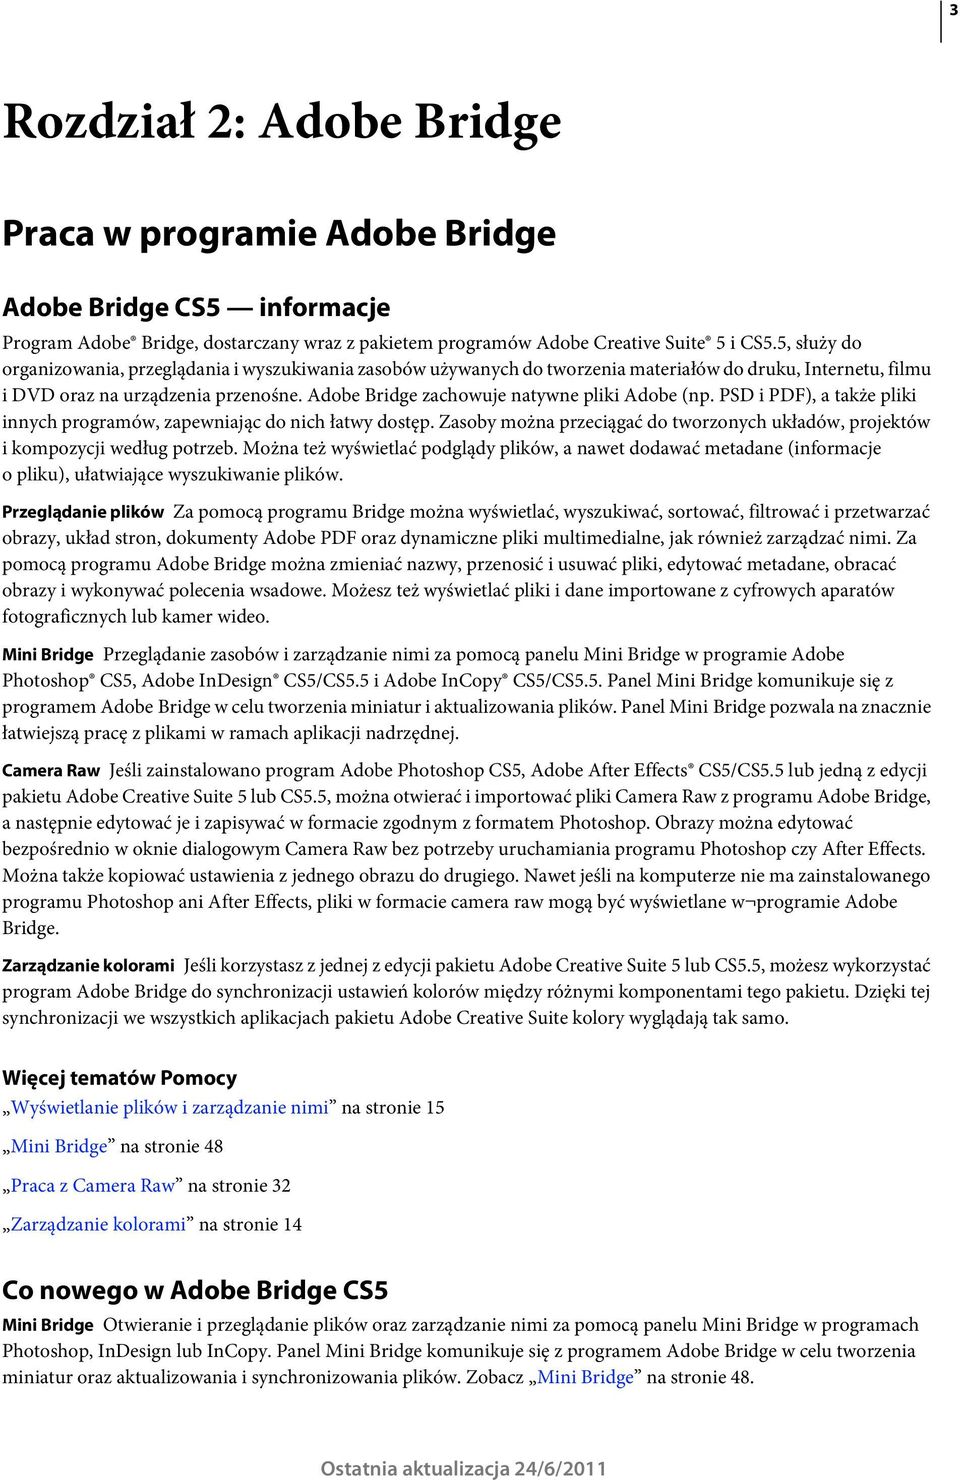 Adobe Bridge zachowuje natywne pliki Adobe (np. PSD i PDF), a także pliki innych programów, zapewniając do nich łatwy dostęp.